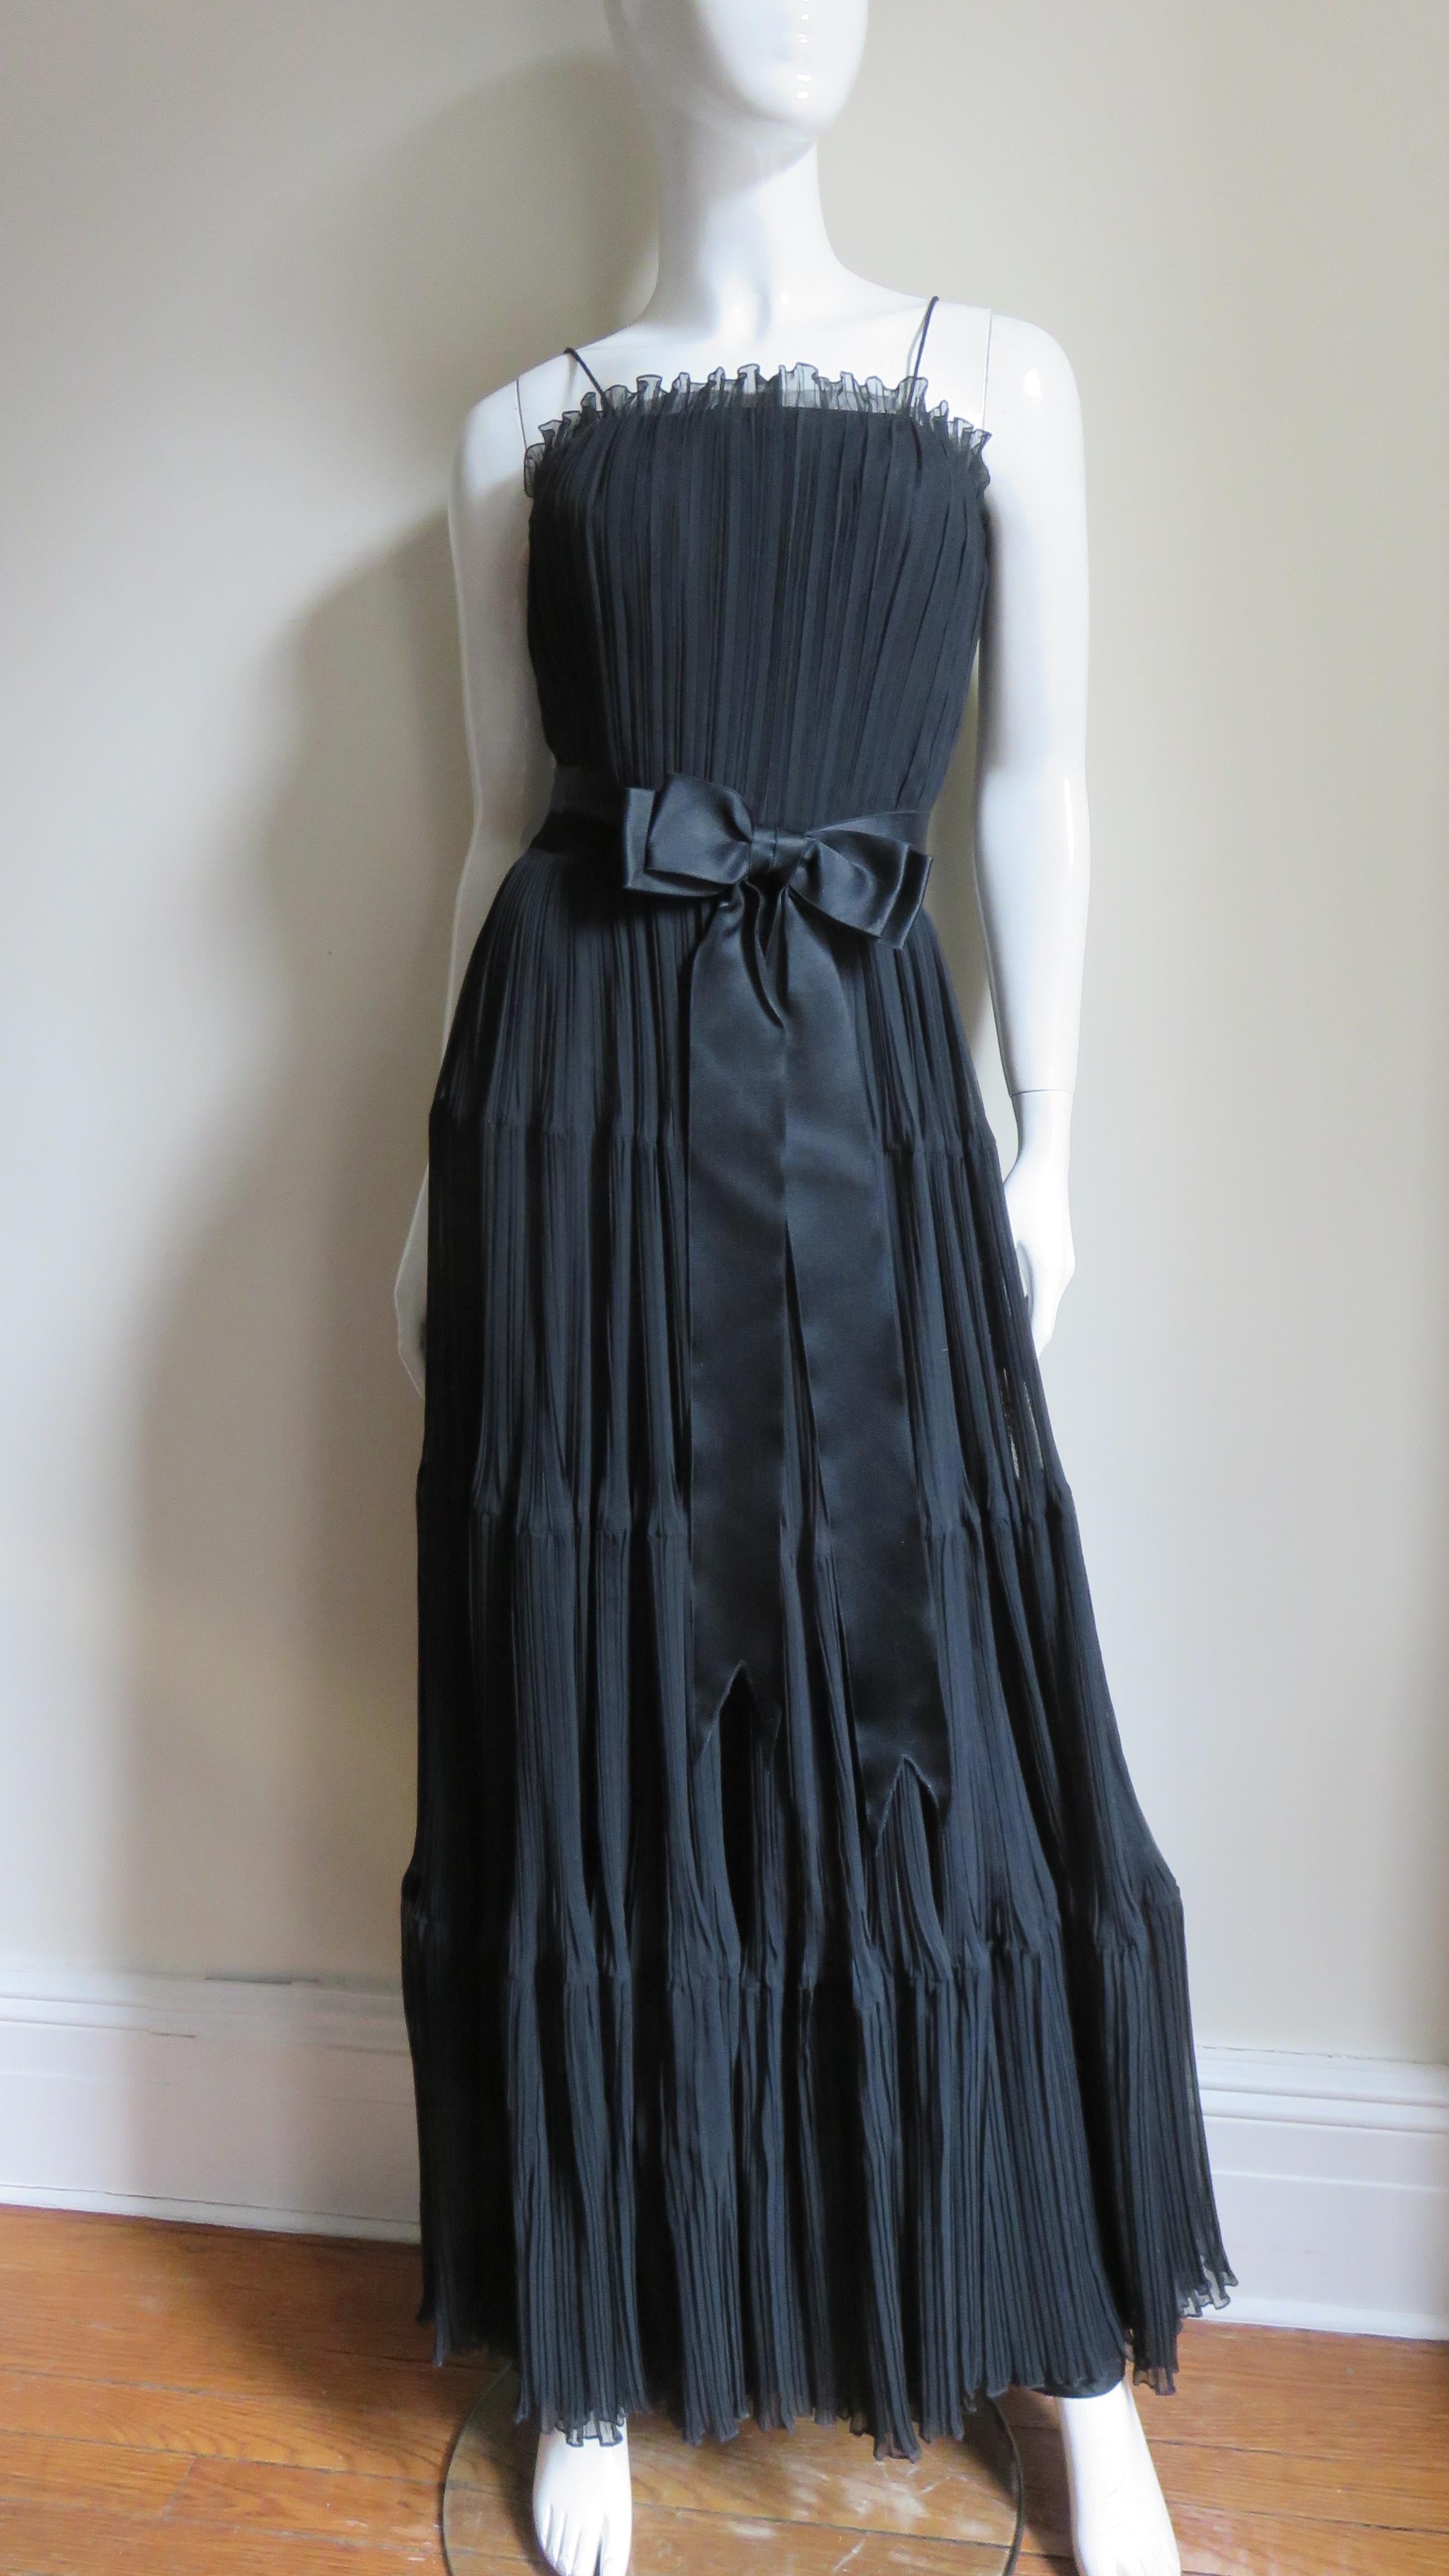 Ein schwarzes Kleid mit Mikrofalten aus Seide von Jean Louis. Das Kleid hat ein tailliertes Mieder mit einem entbeinten Innenkorsett, Spaghettiträger und einen langen, vollen Rock mit 4 Stufen.  Es ist vollständig mit schwarzer Seide gefüttert, hat